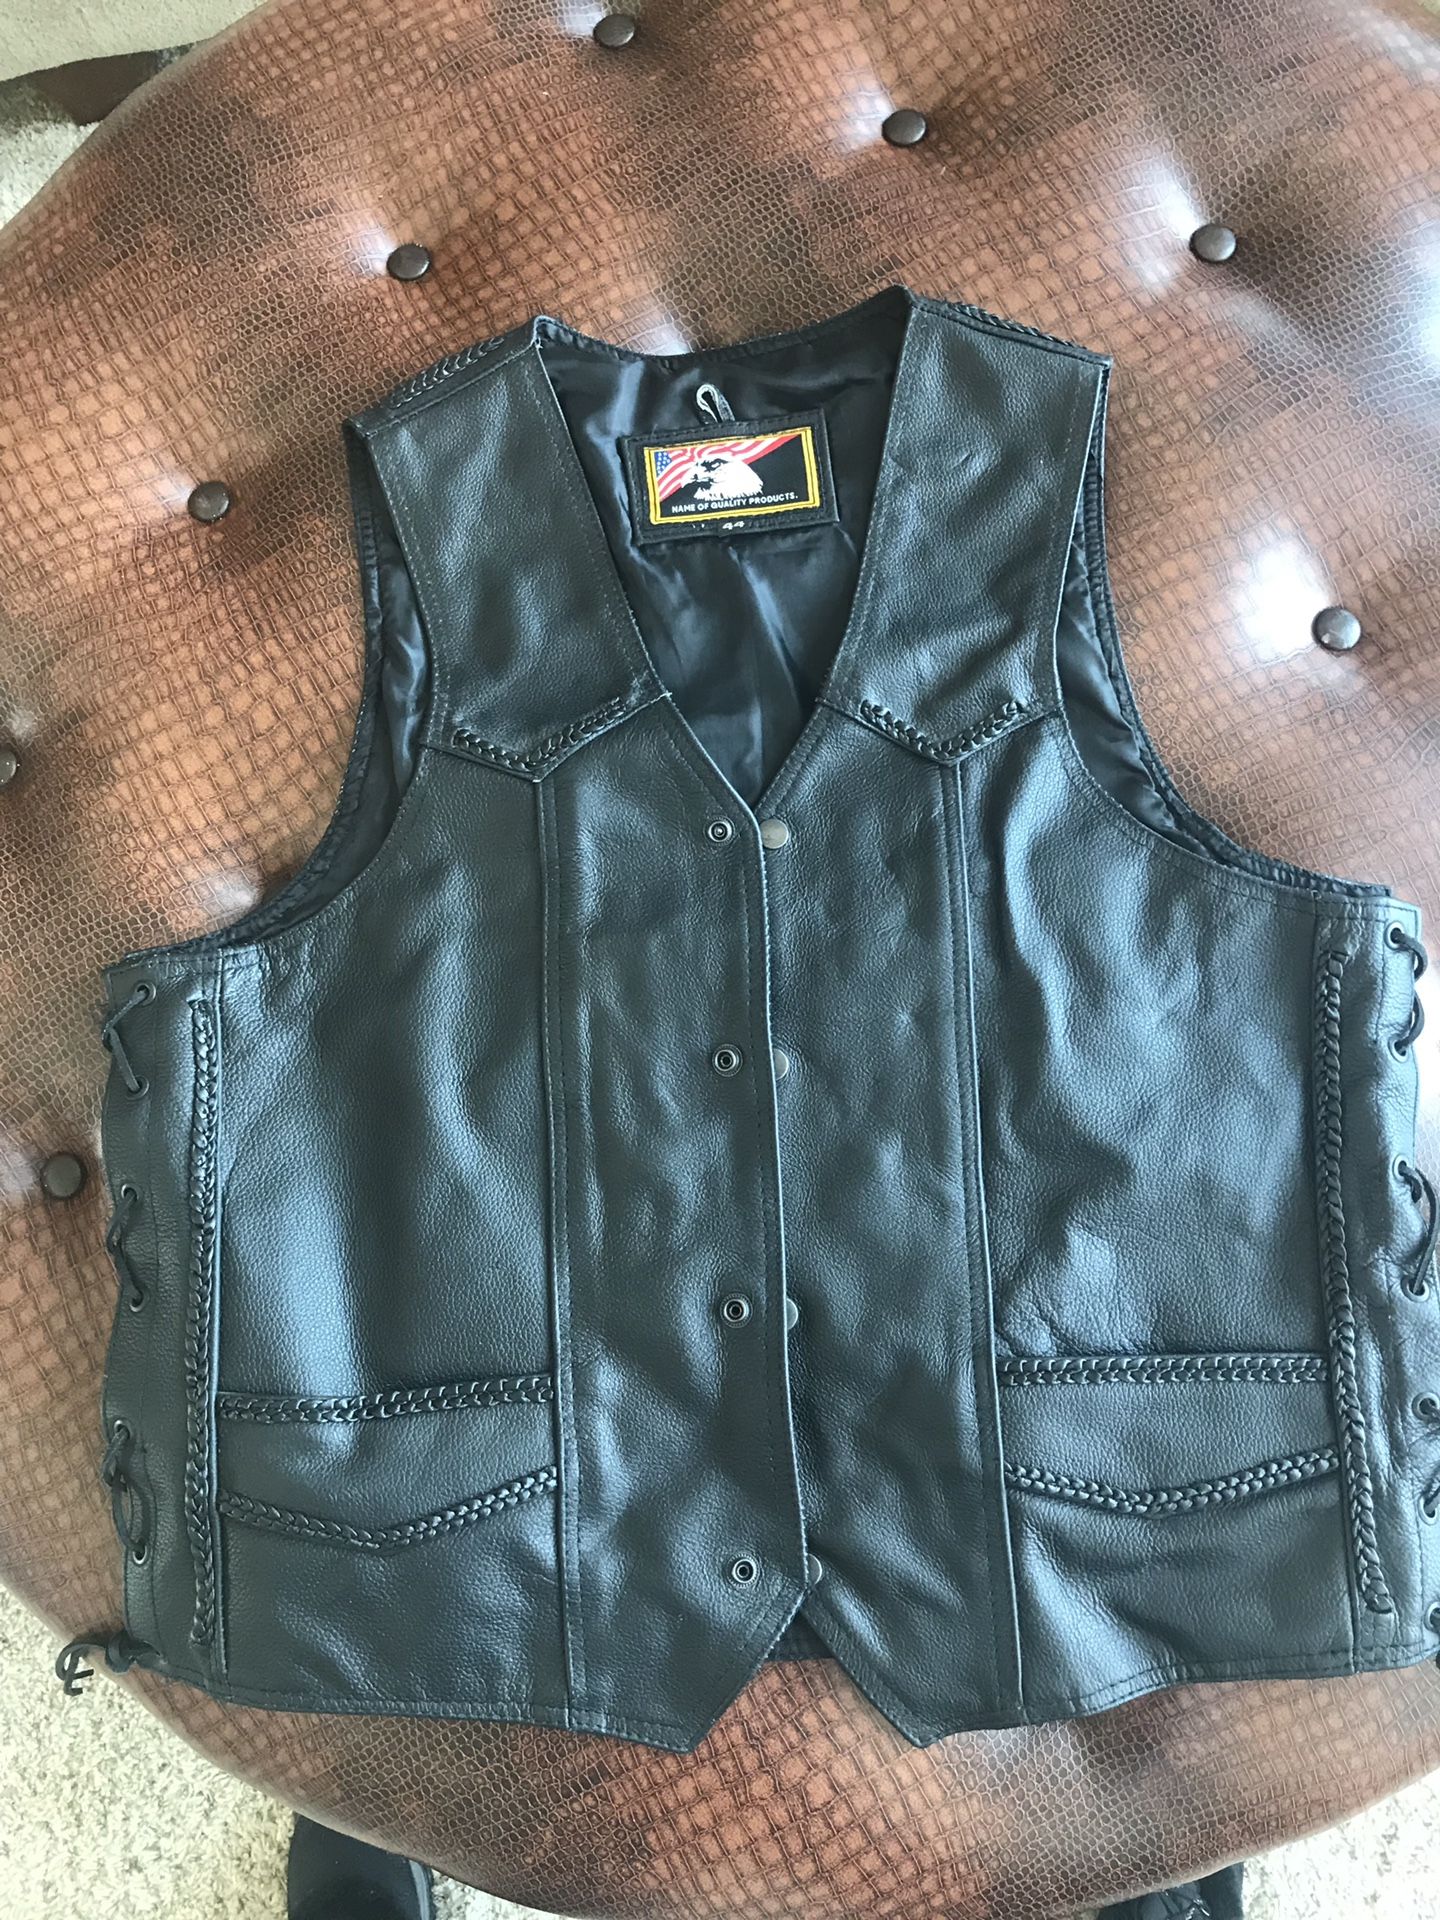 Leather riding vest